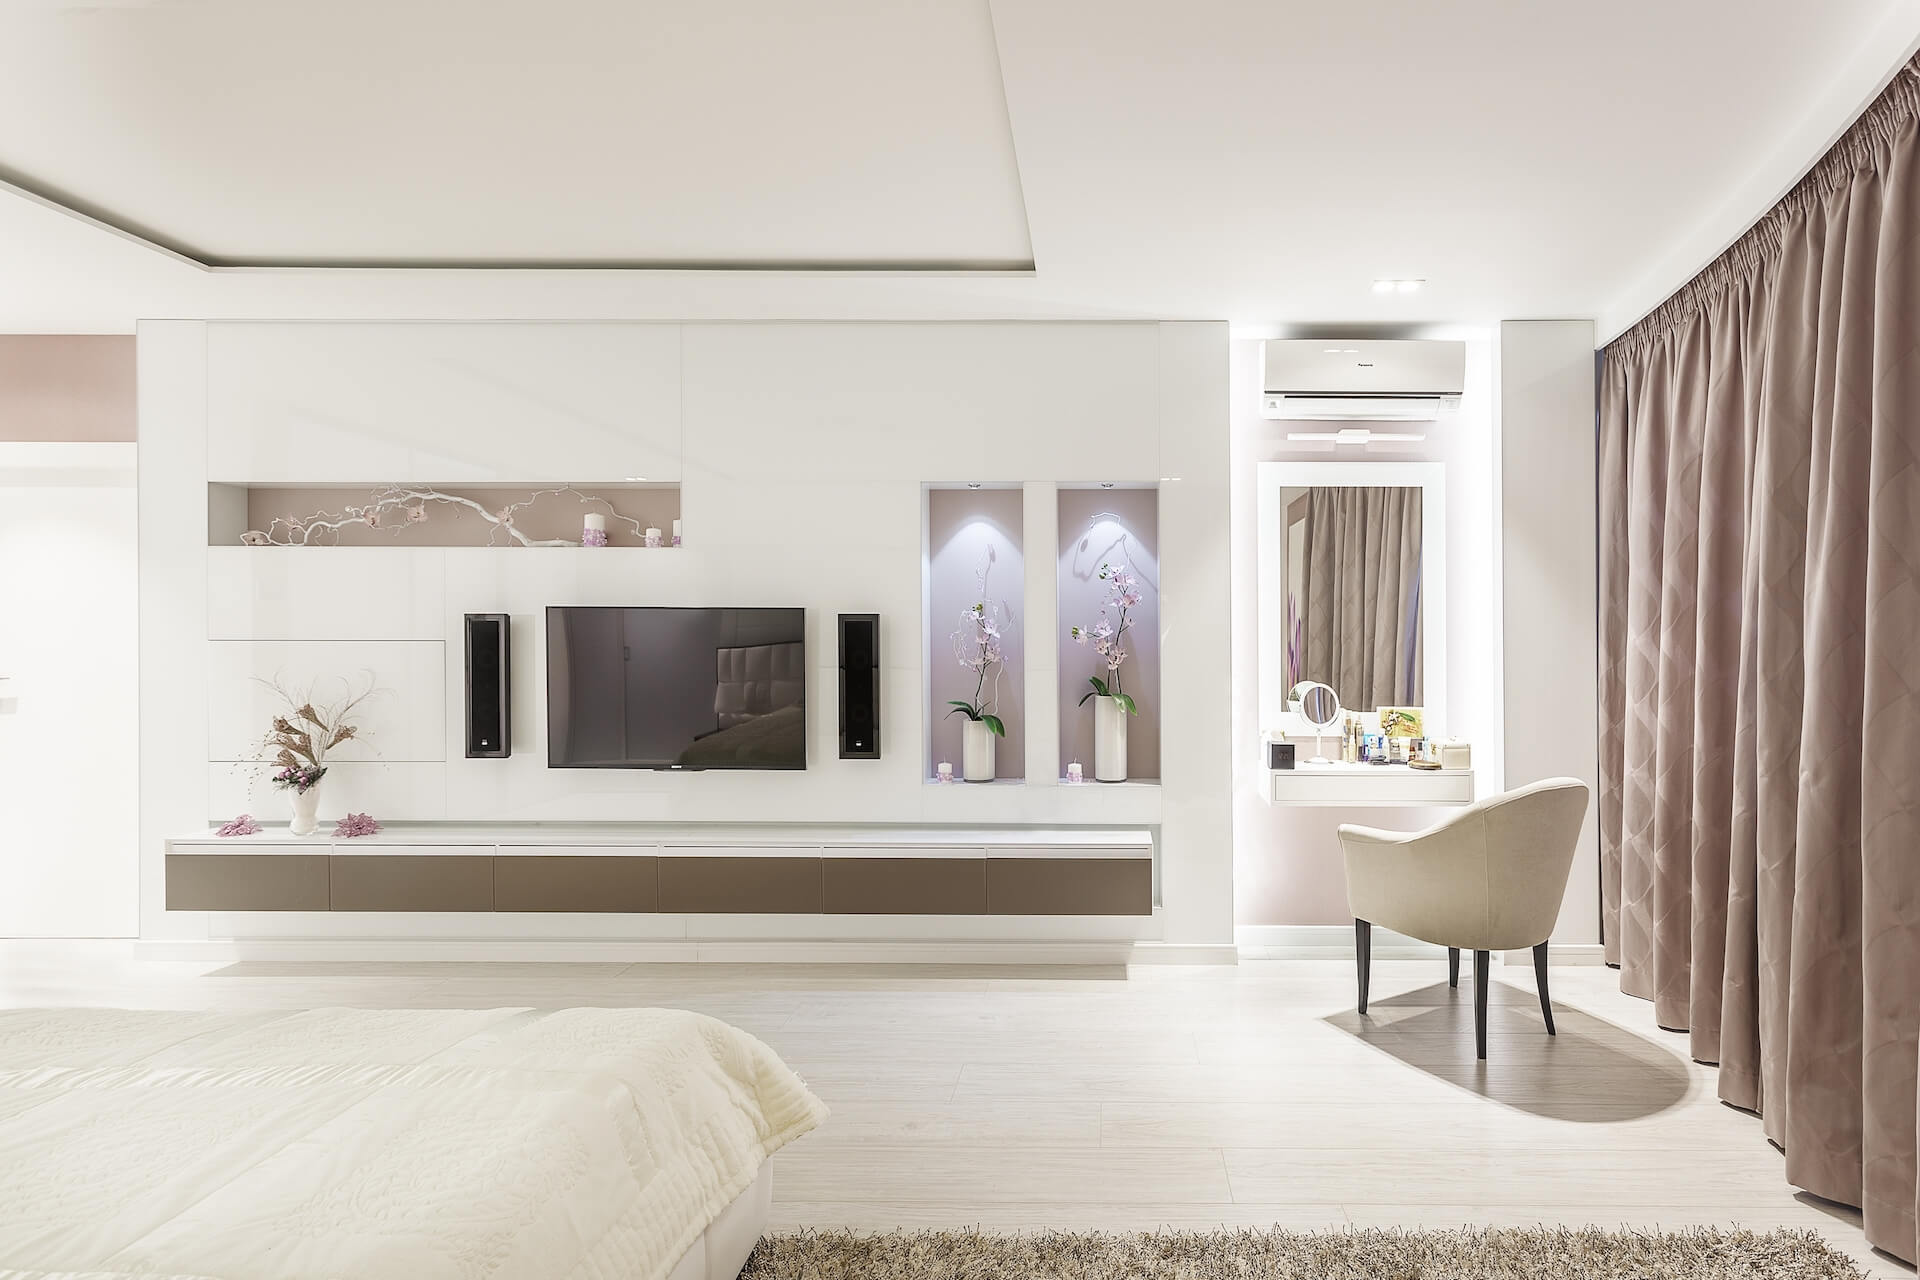 Минимализм дизайна спальни подчеркнут глянцевыми поверхностями белого стекла Lacobel - проекты Setus Design